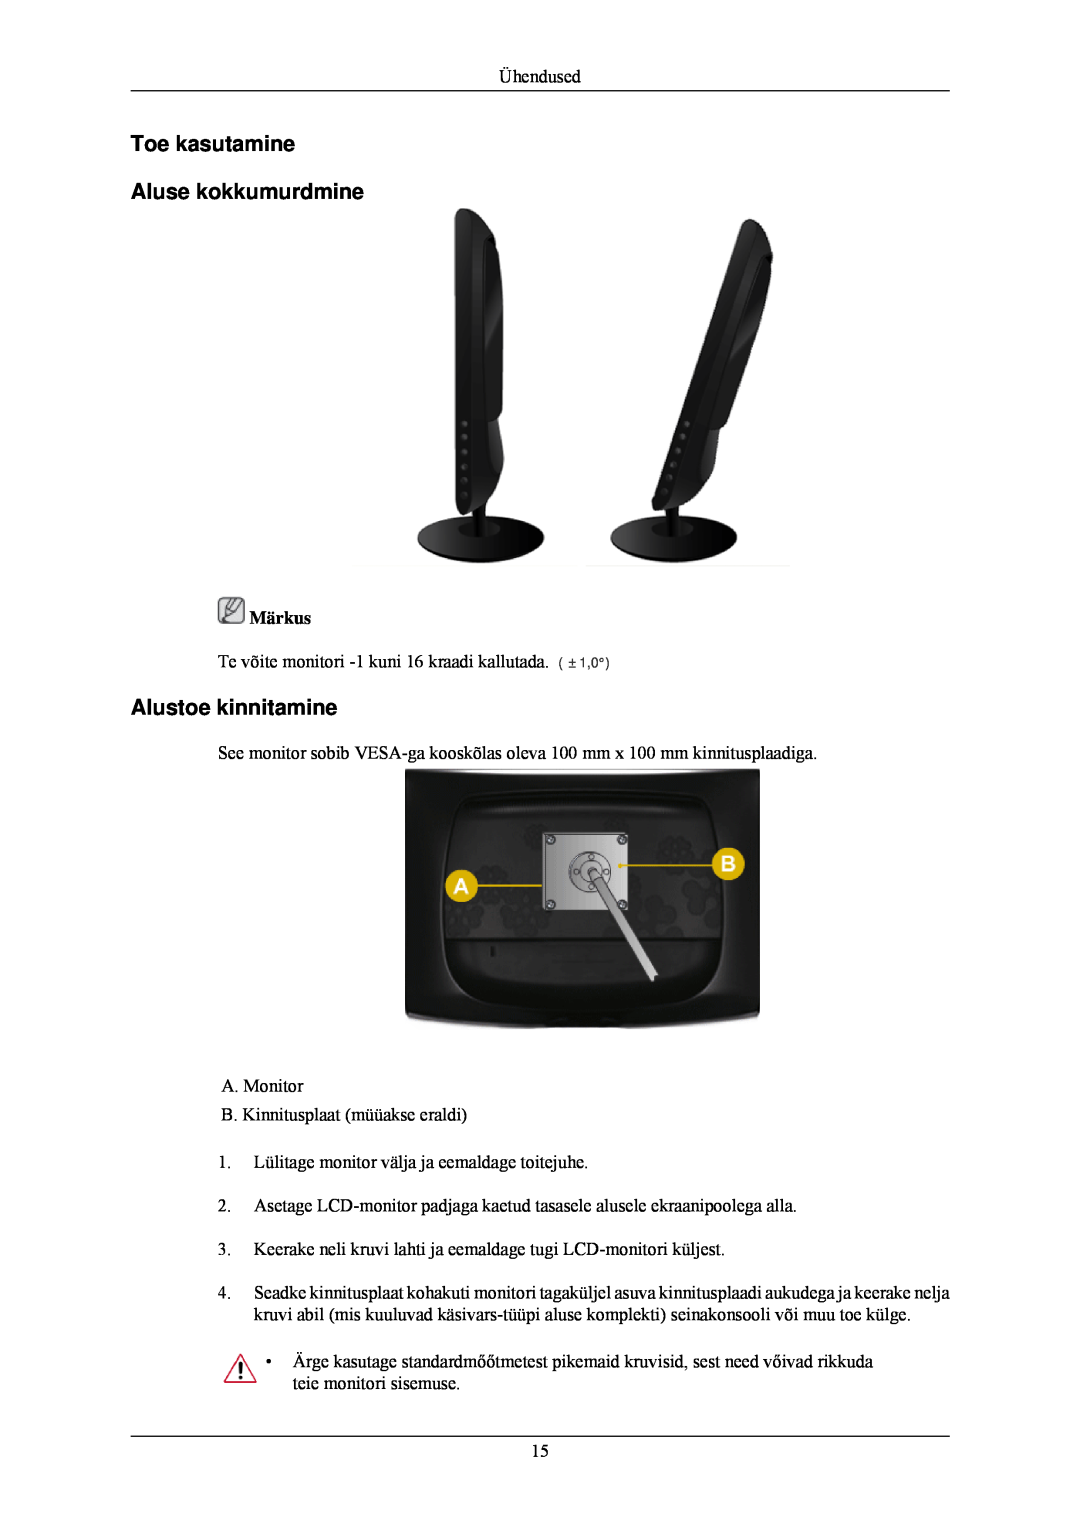 Samsung LS24CMKKFV/EN manual Toe kasutamine Aluse kokkumurdmine, Alustoe kinnitamine 